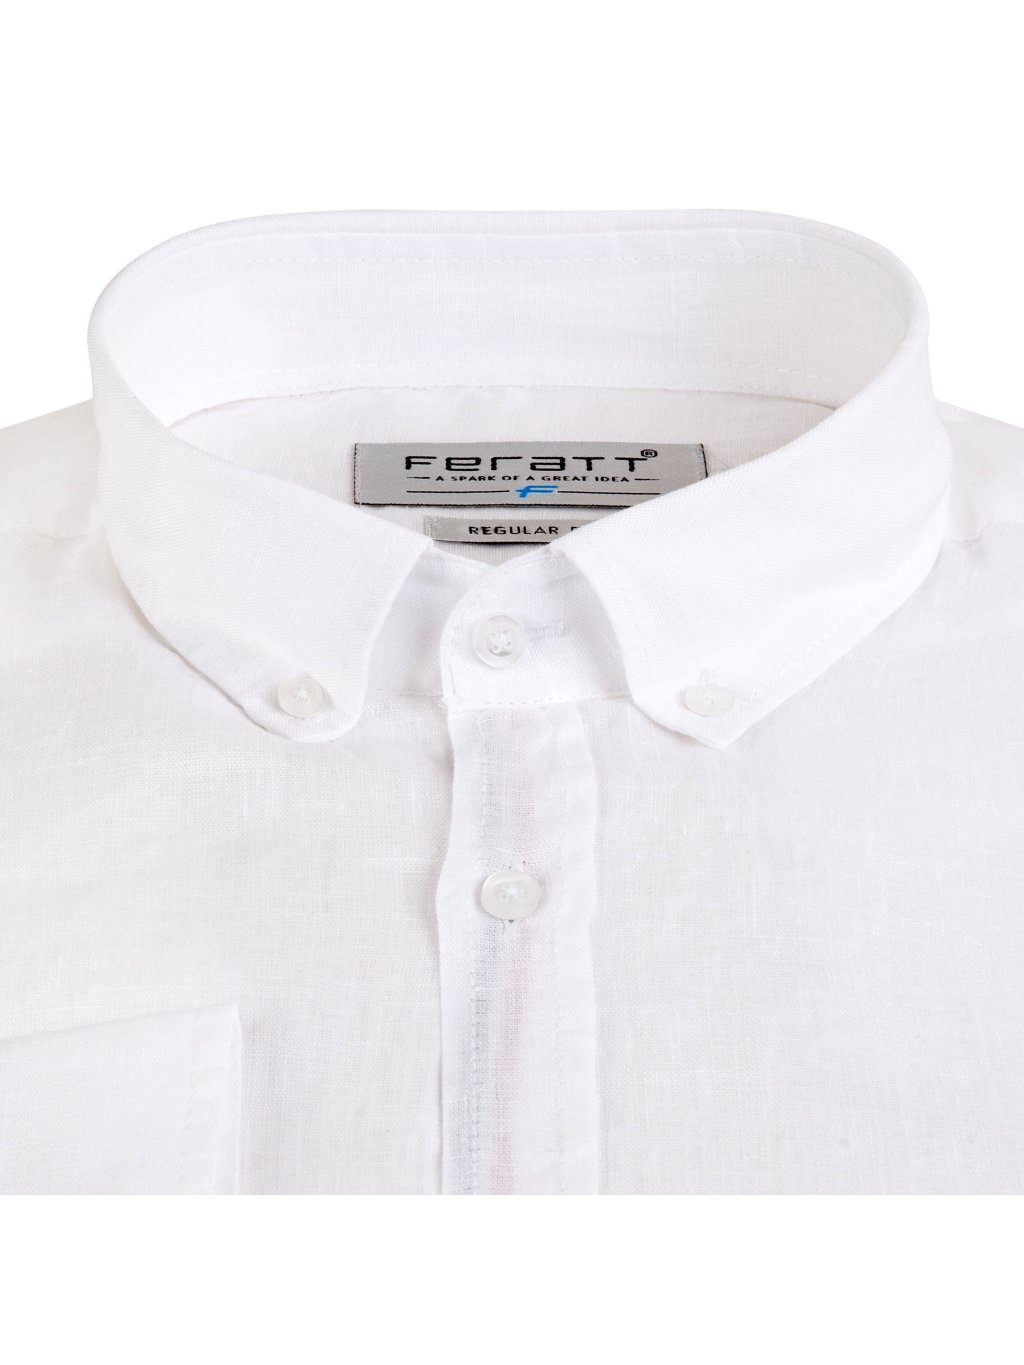 Pánská lněná košile CARIBBEAN 2 Regular bílá - PÁNSKÁ MÓDA